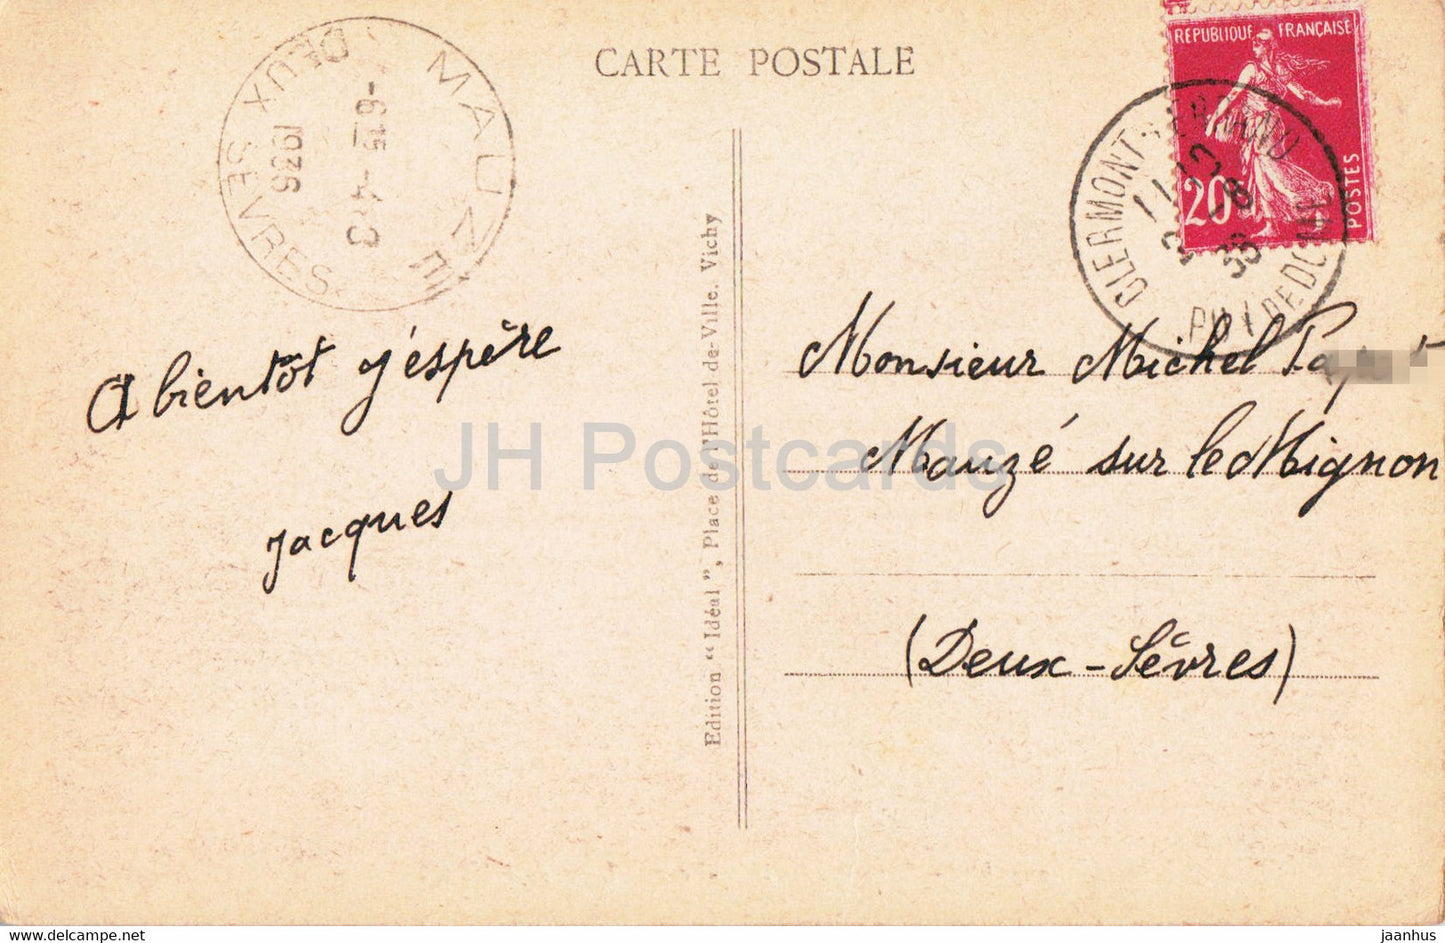 Environs du Mont Dore - Lac de Guery - 3131 - alte Postkarte - 1936 - Frankreich - gebraucht